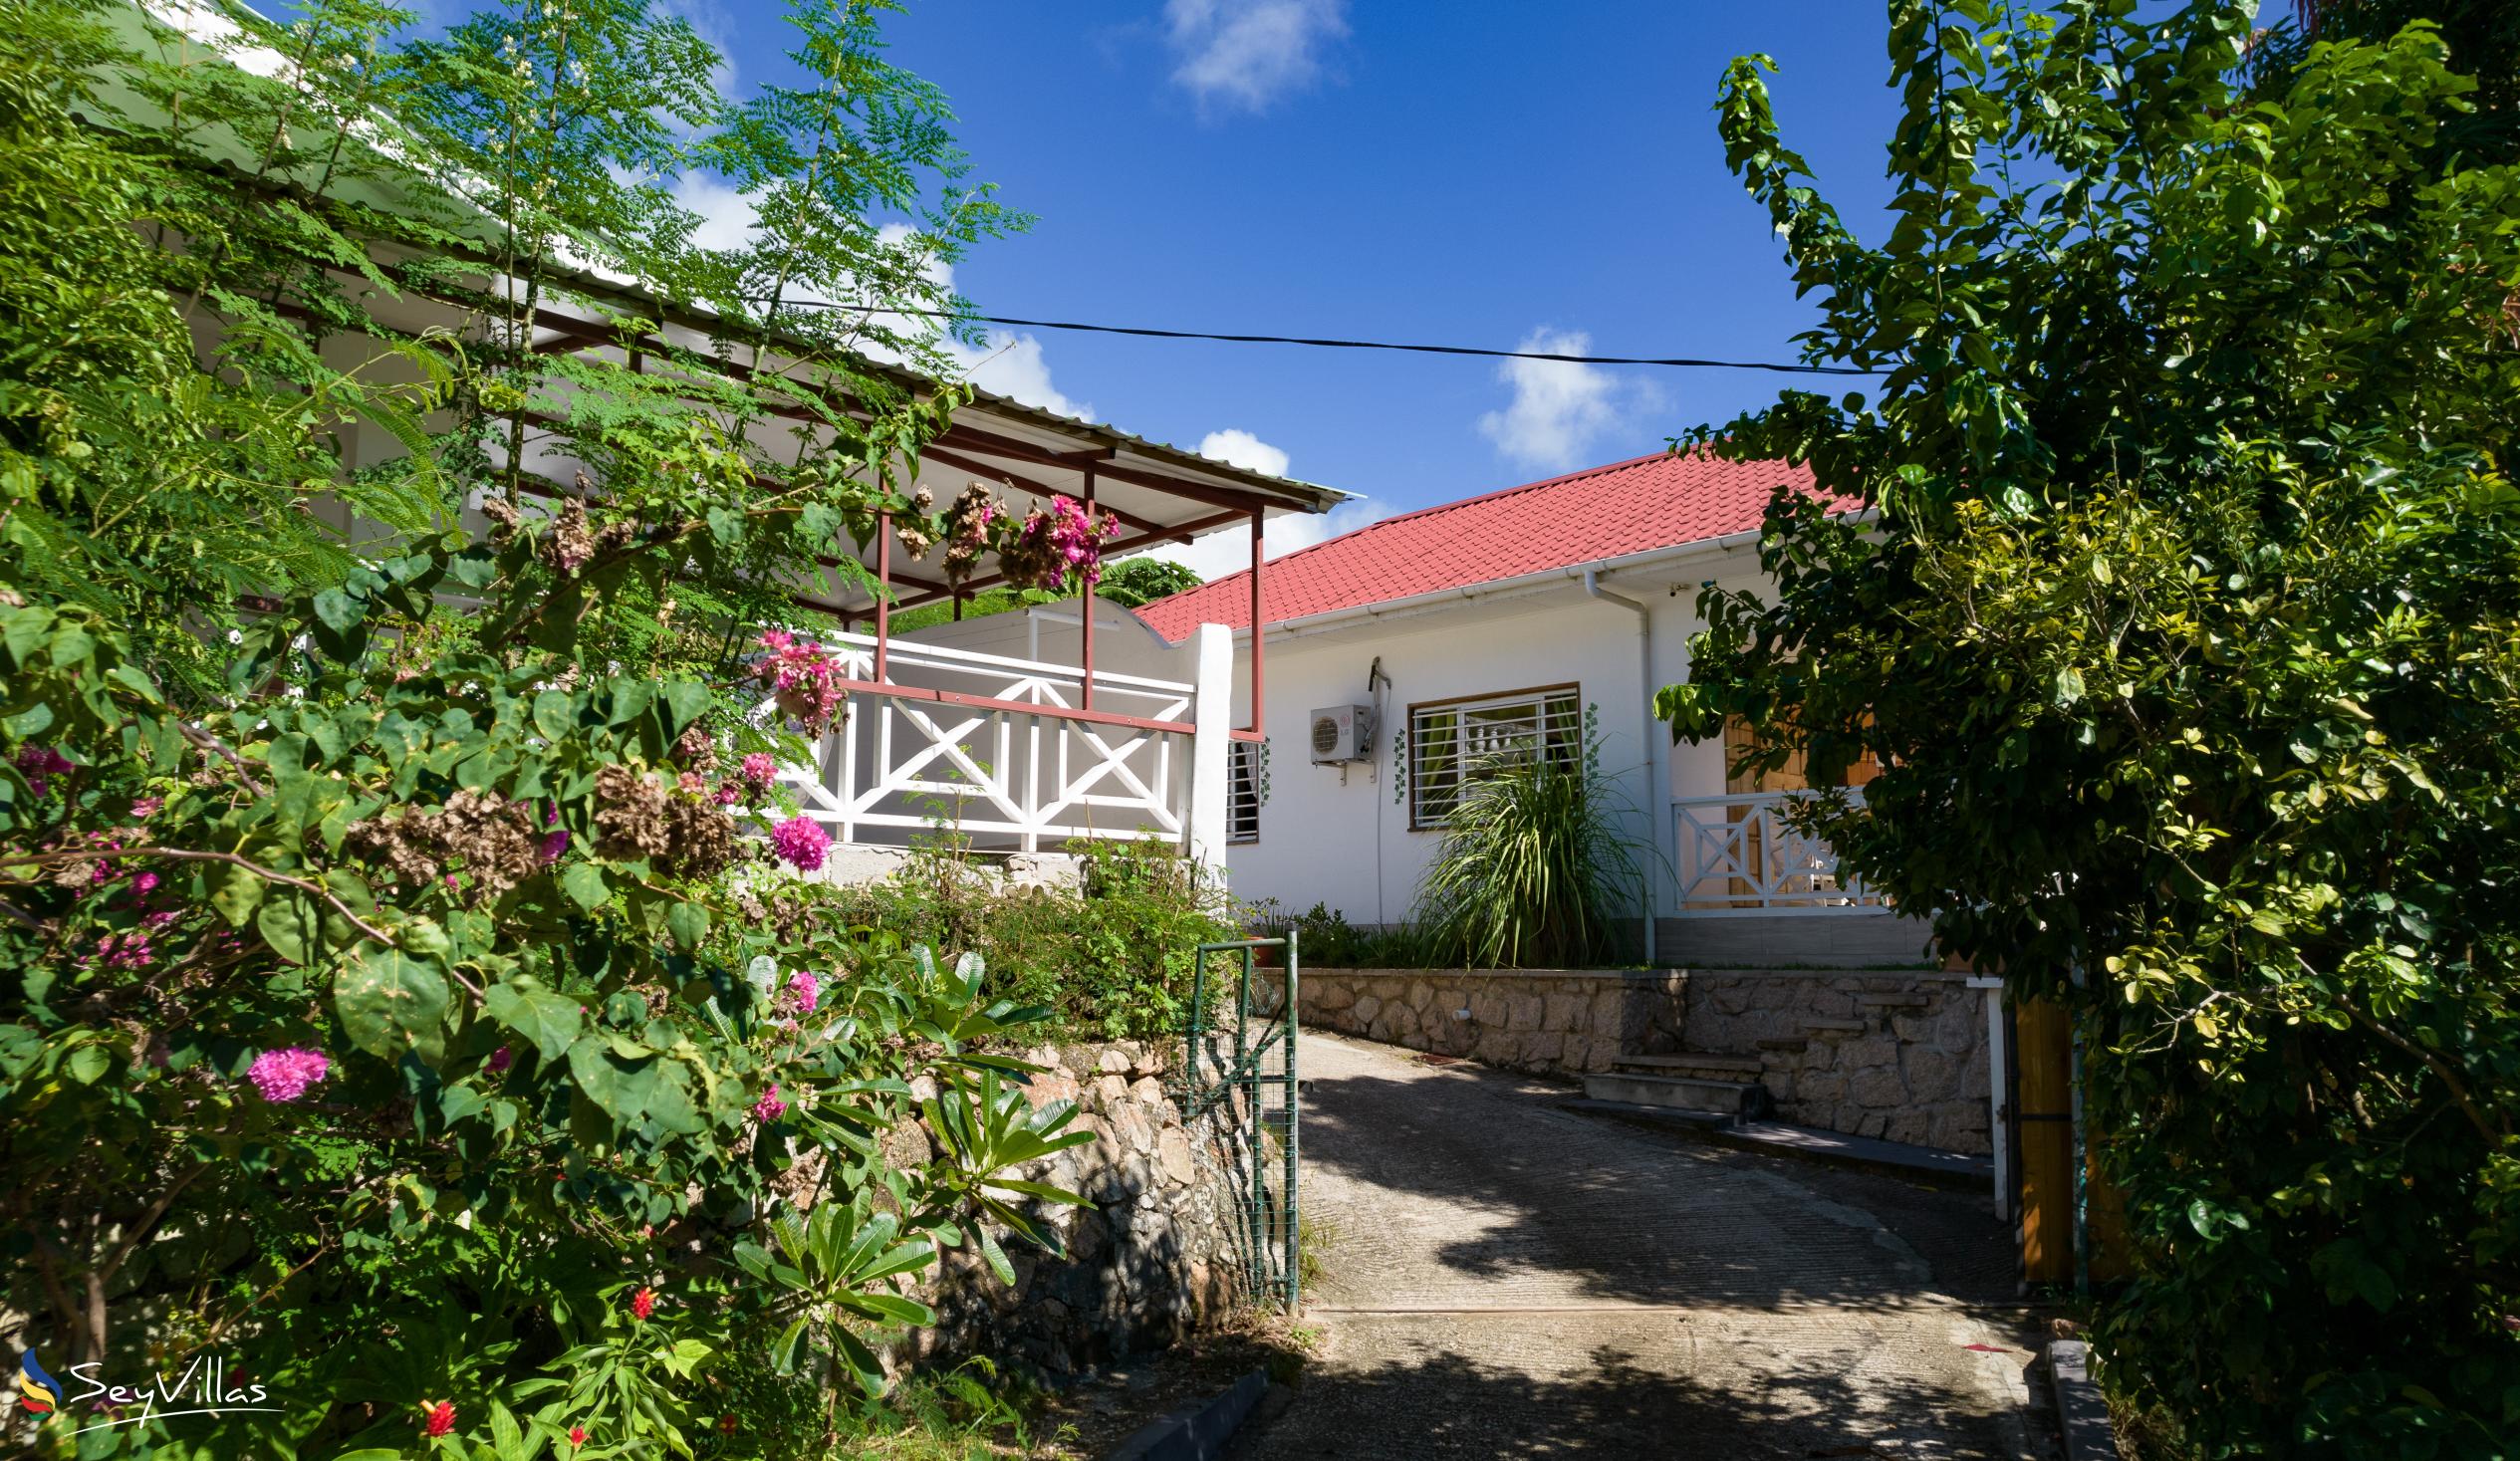 Foto 6: Baie Ste Anne Maison des Vacanze - Aussenbereich - Praslin (Seychellen)